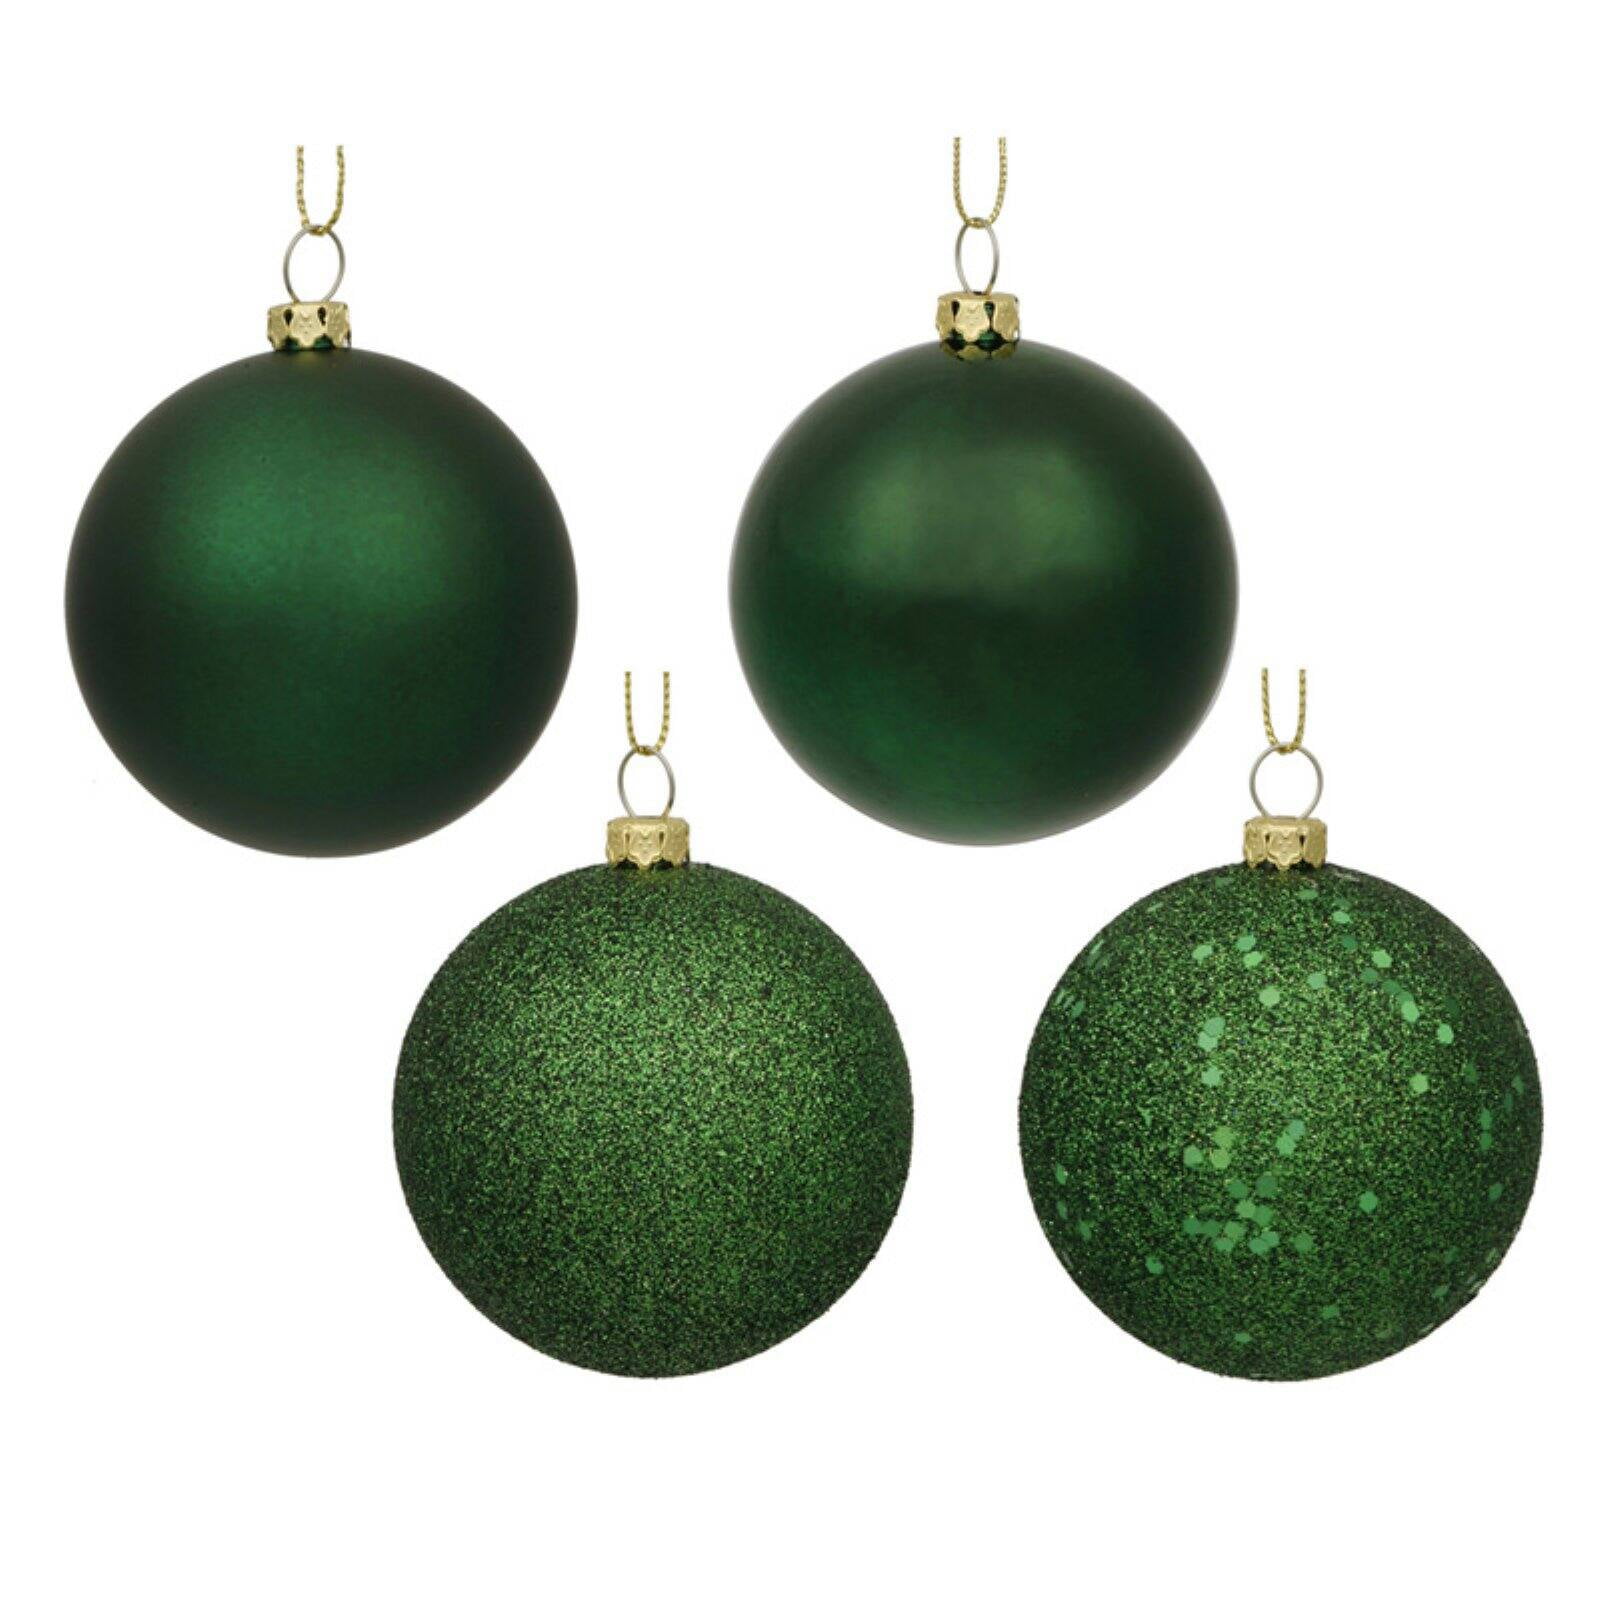 Includes 4 Pieces per Bag. Vickerman 6 Multi-Colored Beaded Ball Ornament 